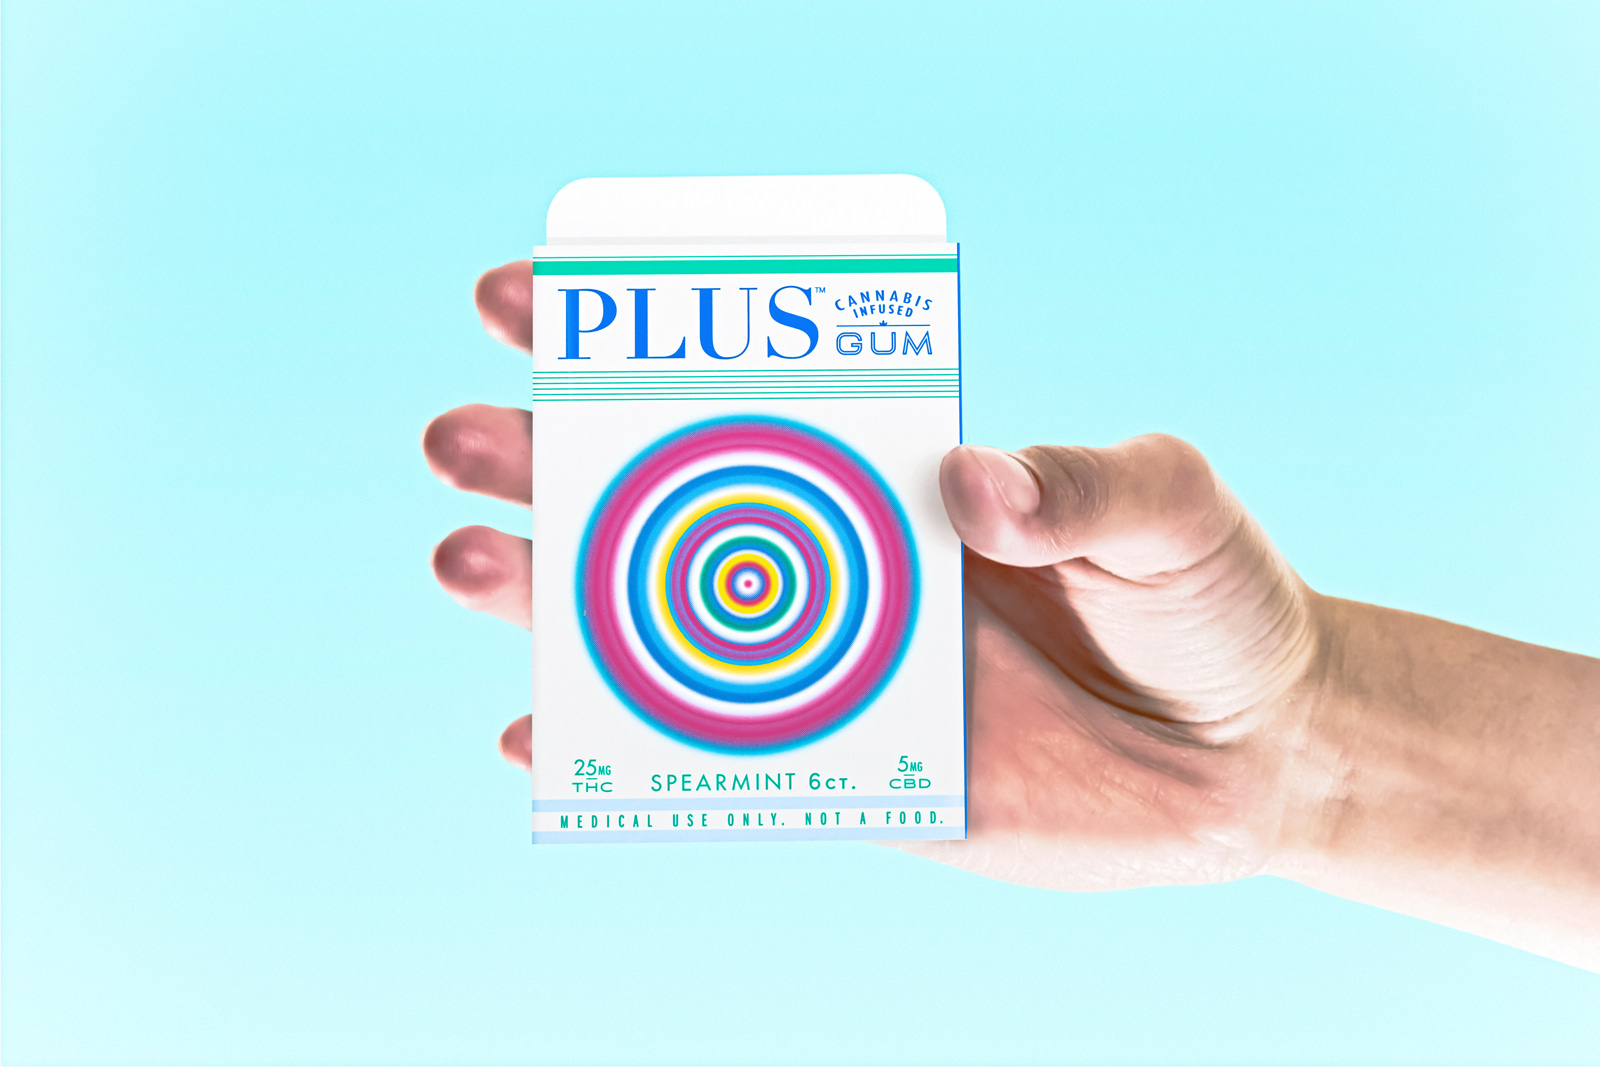 phillip fivel nessen Plus Gum marijuana product design